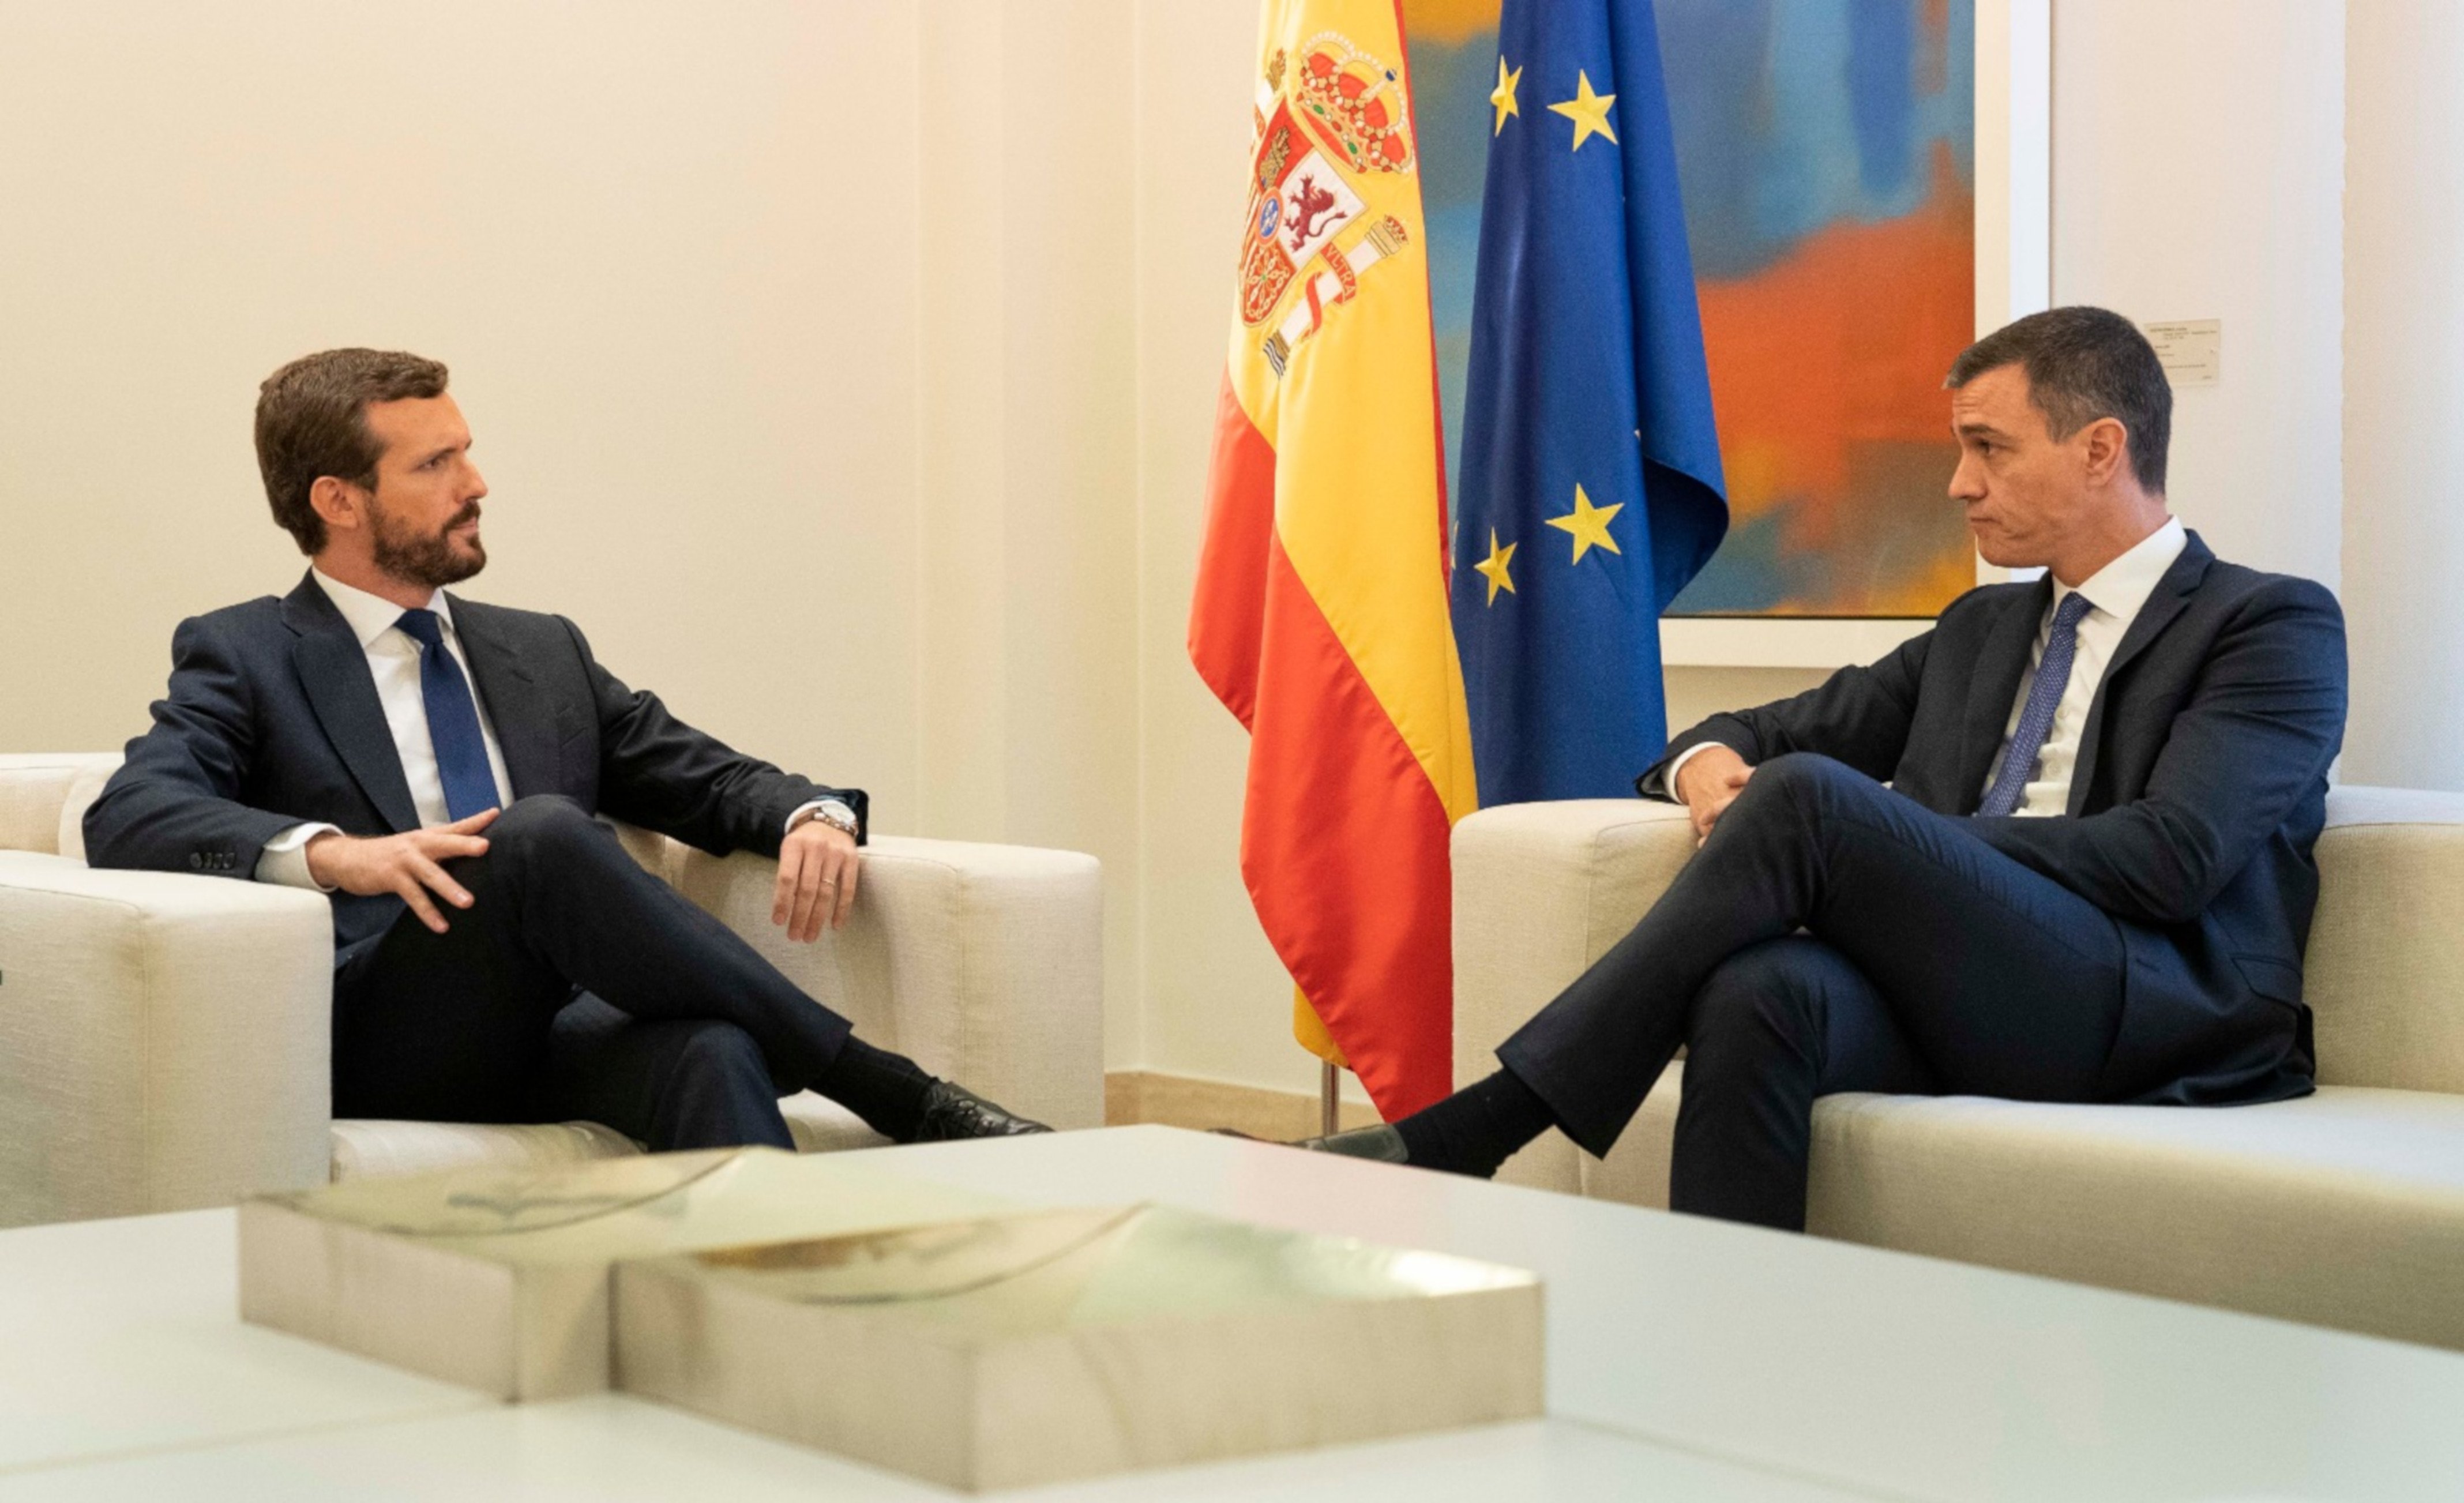 El PP després que Calviño perdi a l'Eurogrup: "Un clar fracàs de Sánchez"